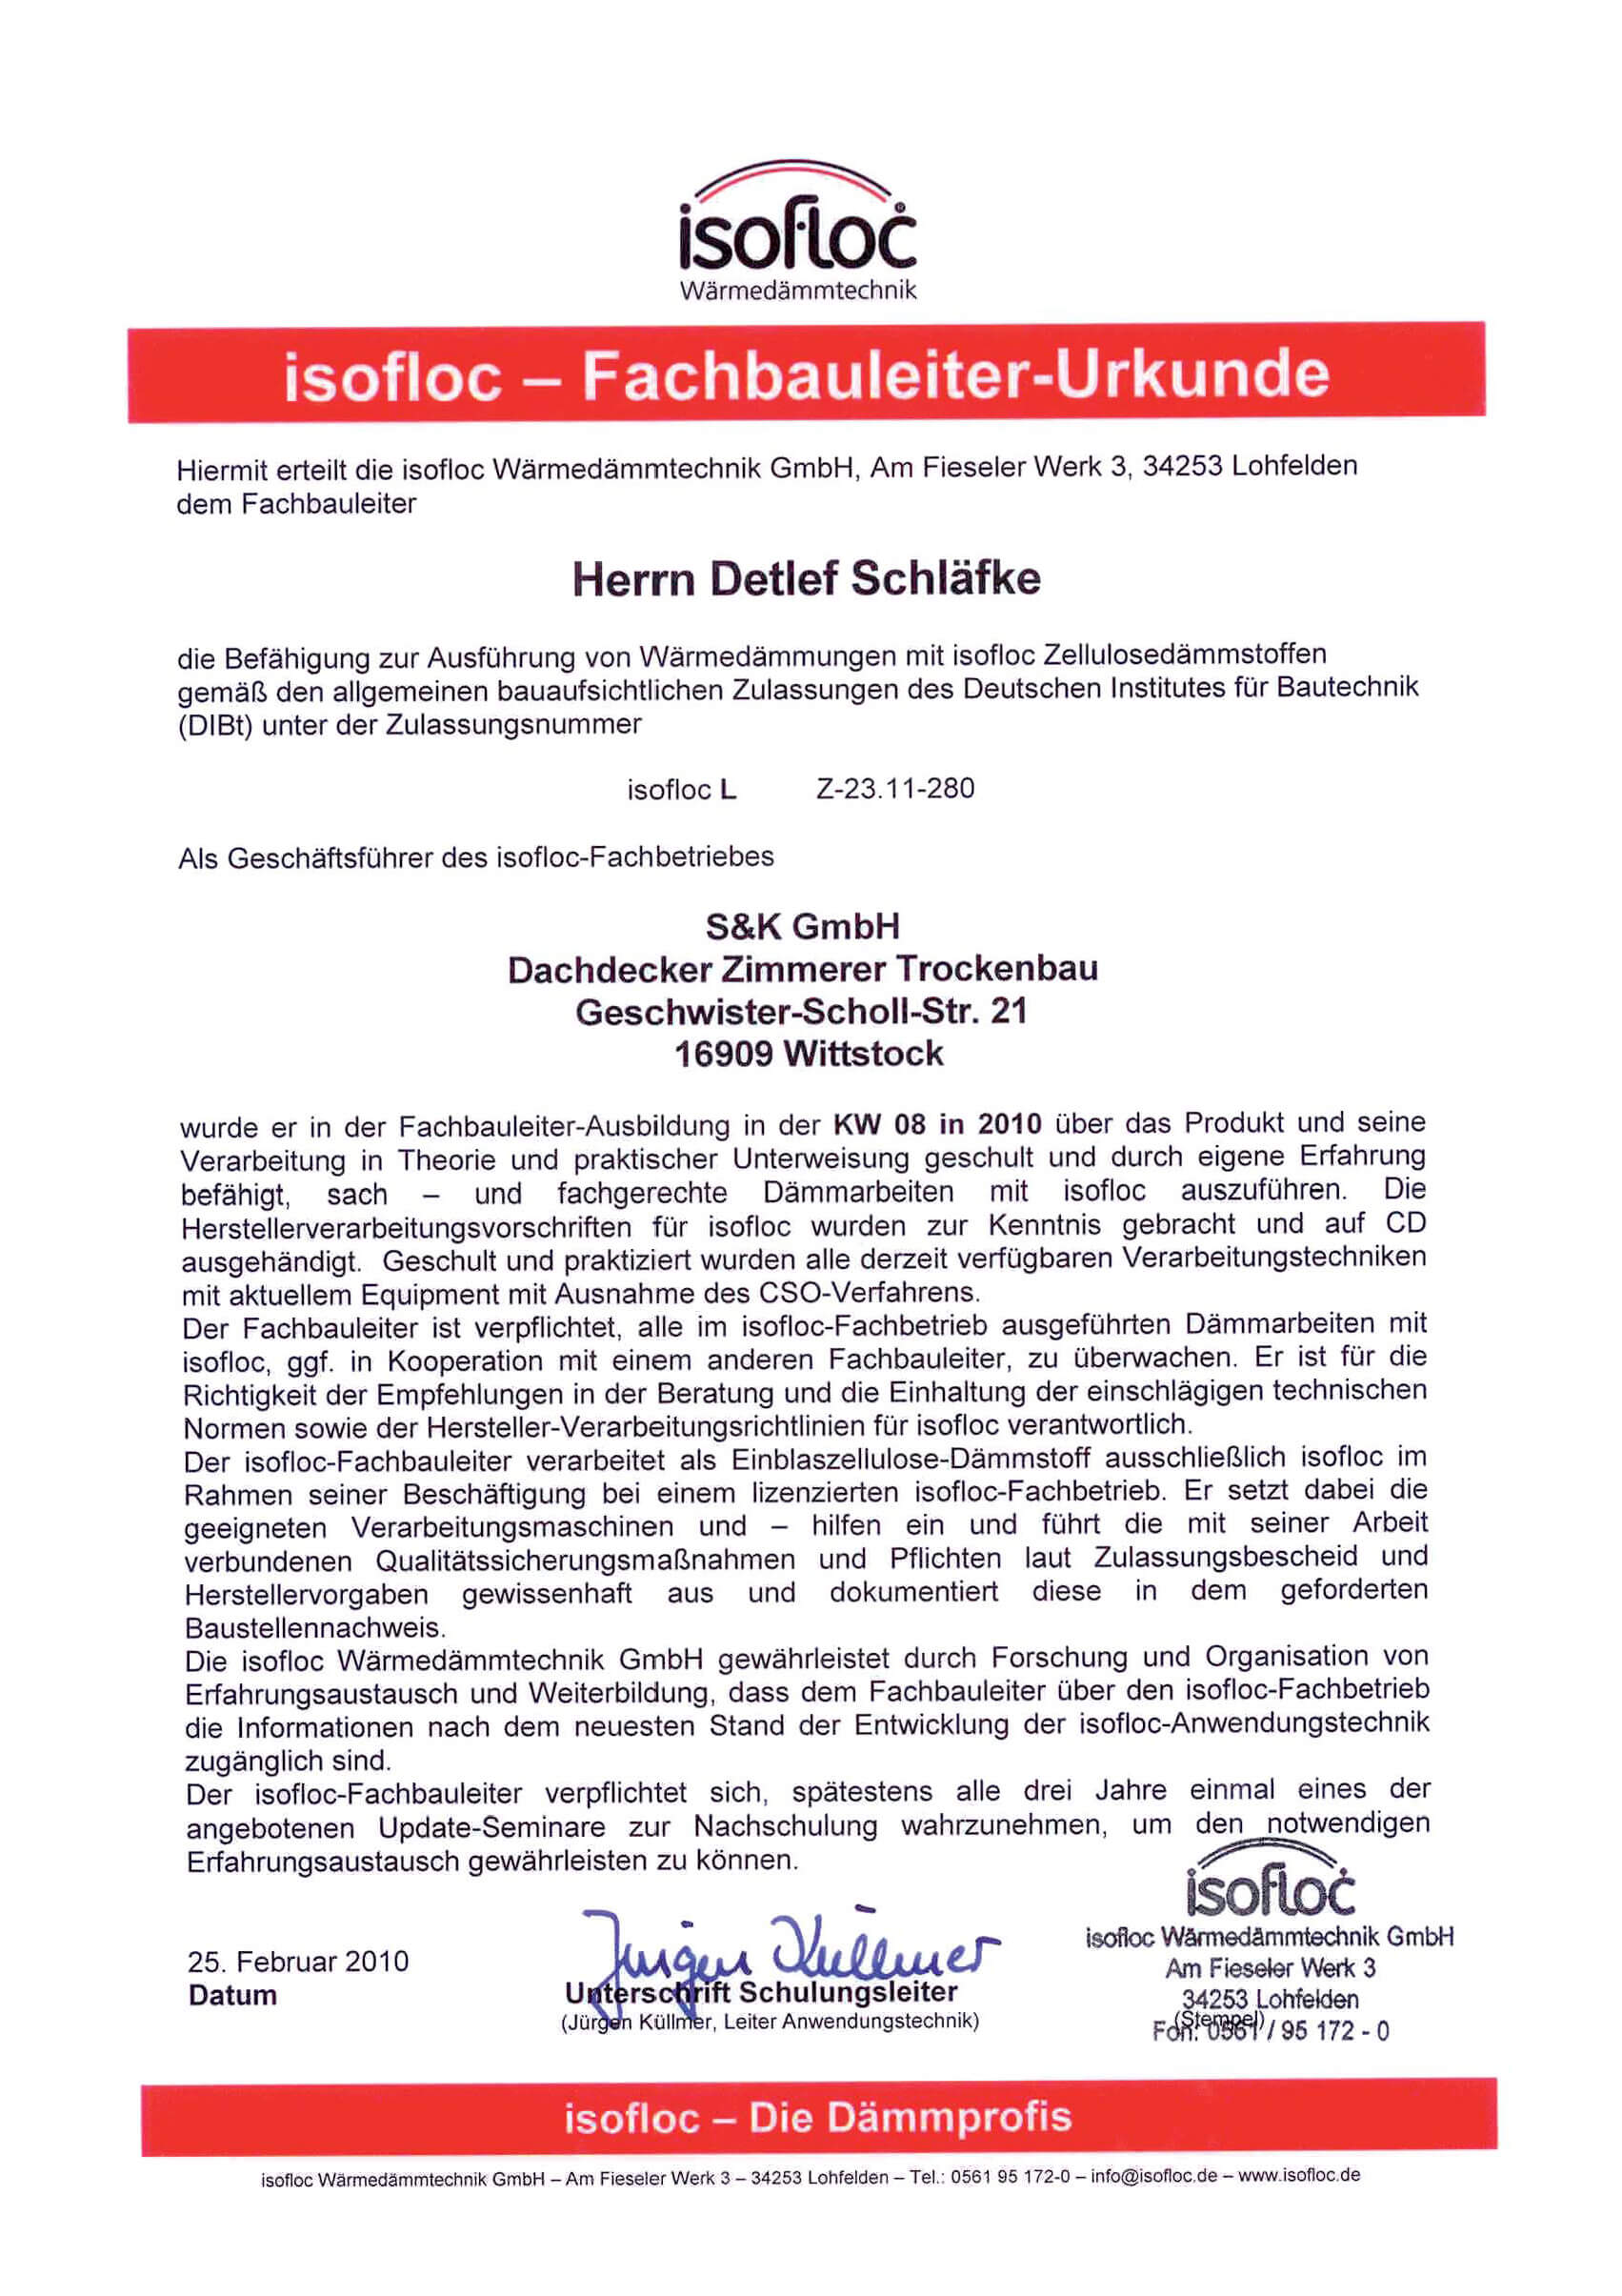 Isofloc - Fachbauleiter-Urkunde 